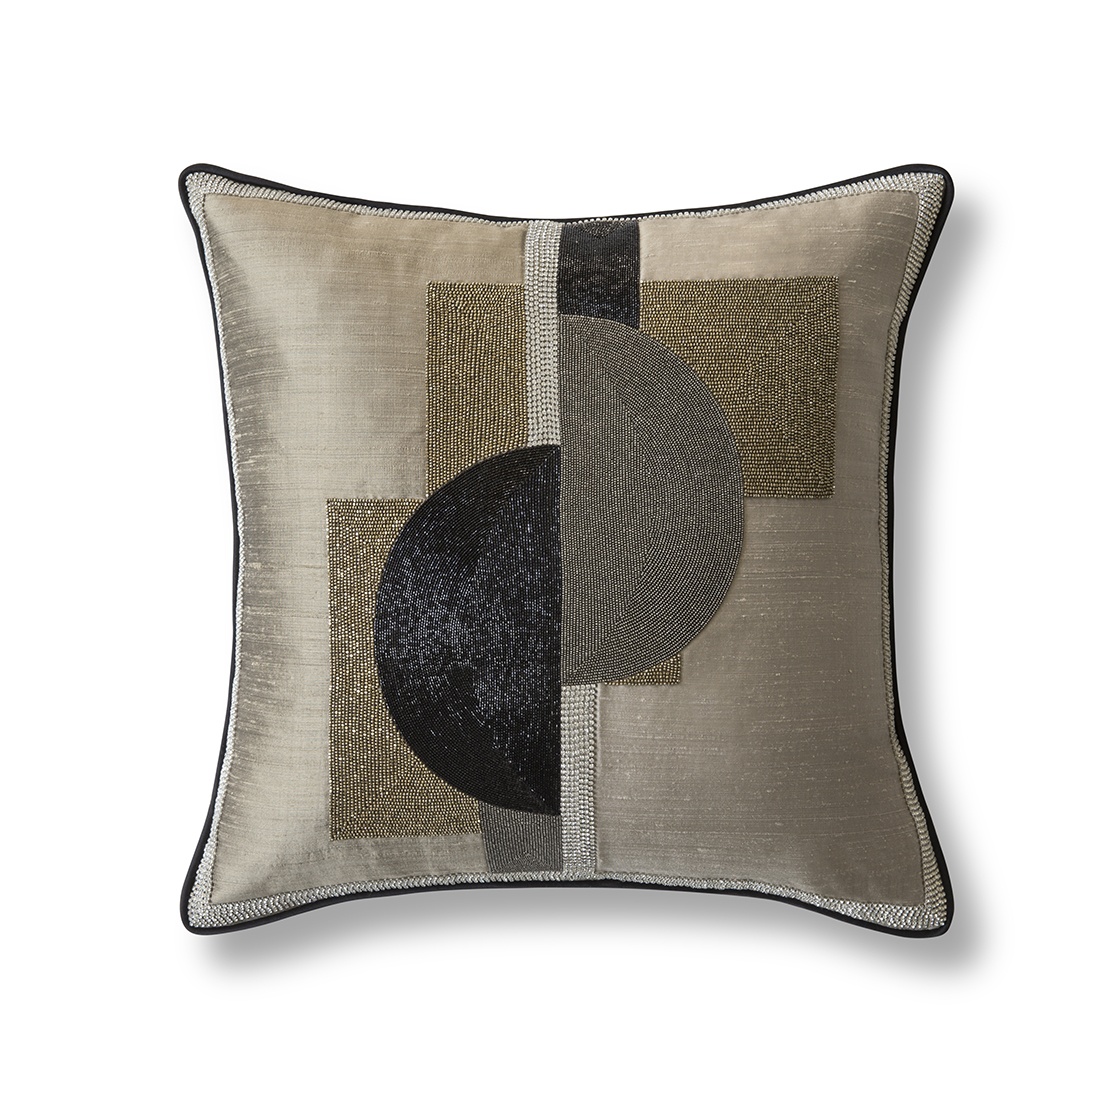 Piet cushion on Erne silk - Silver birch - Beaumont & Fletcher